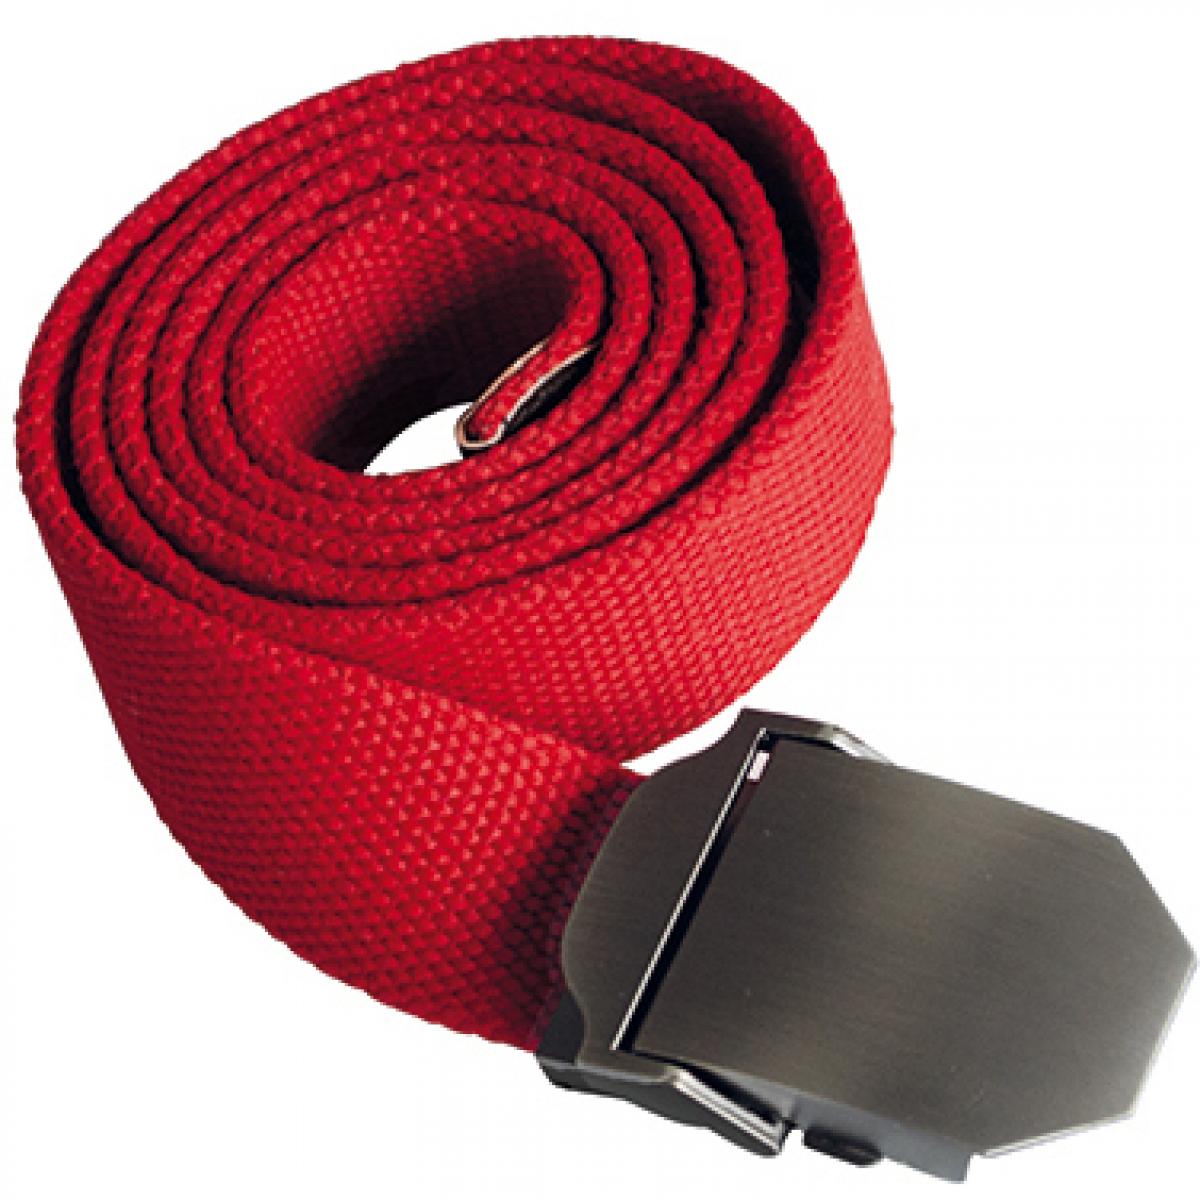 Hersteller: Korntex Herstellernummer: KXWWBN Artikelbezeichnung: Workwear Belt Classic, 140 cm L, selbst kürzbar, B 4 cm Farbe: Red